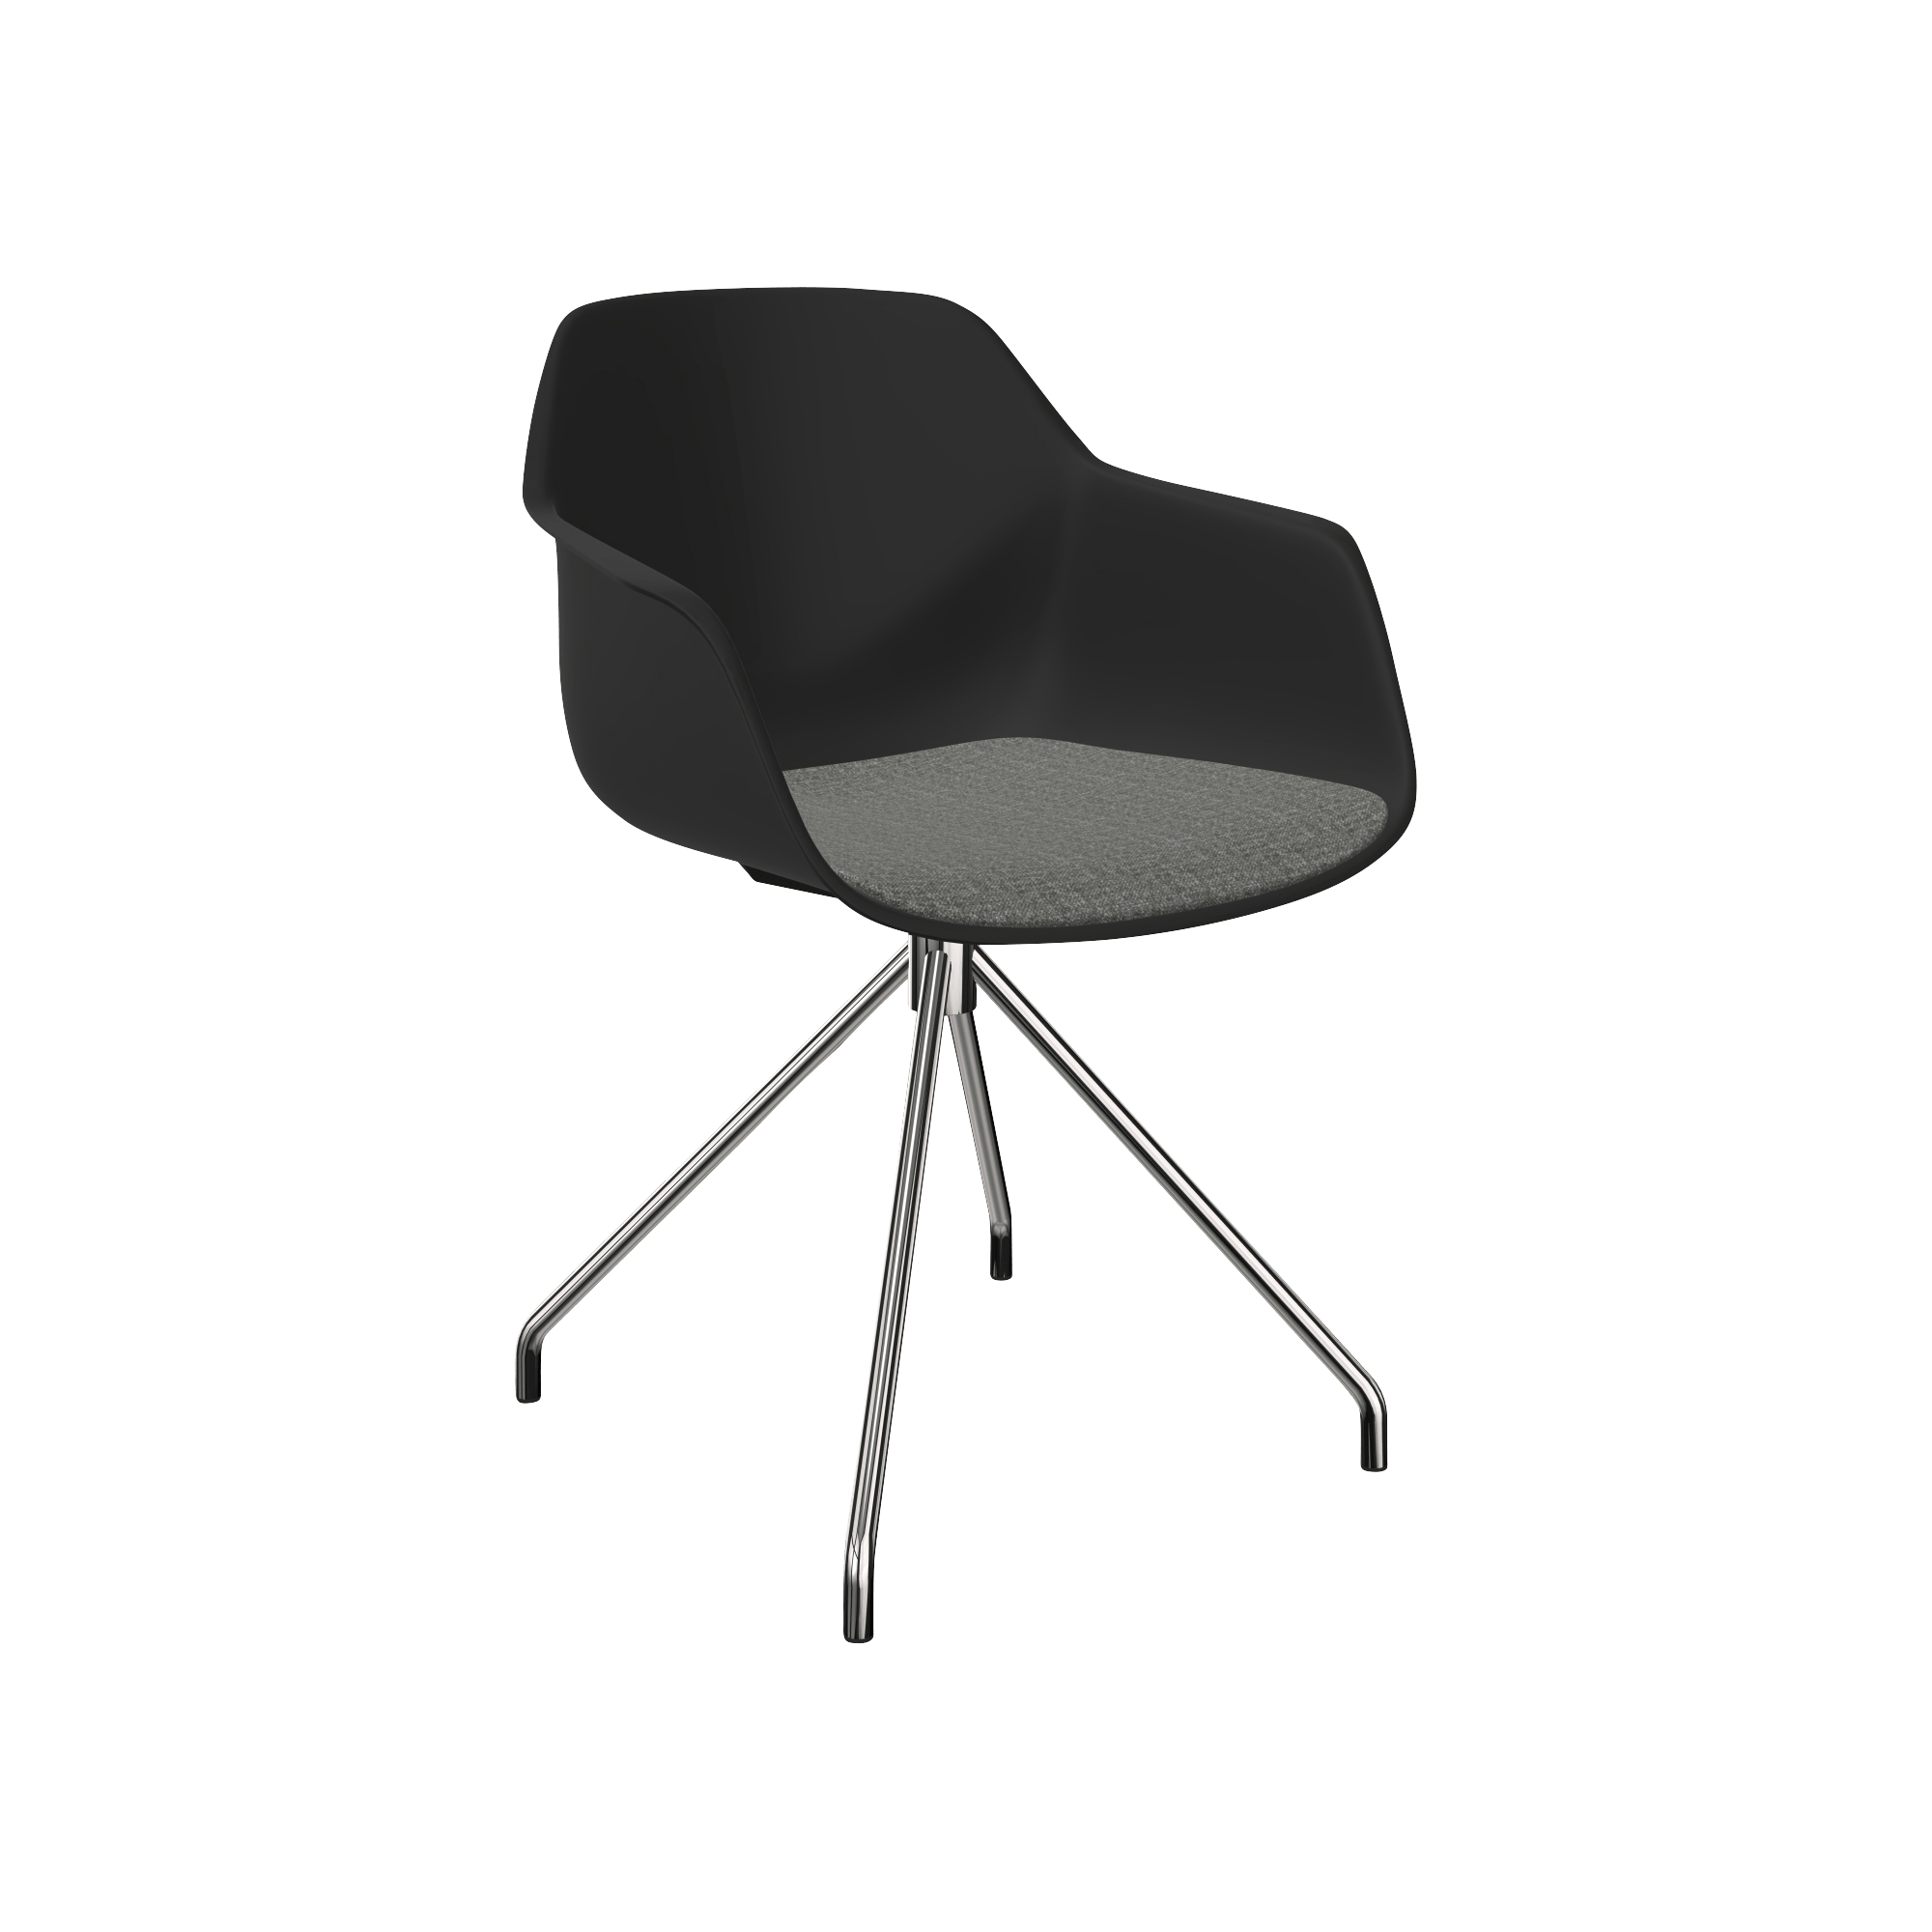 A black chair